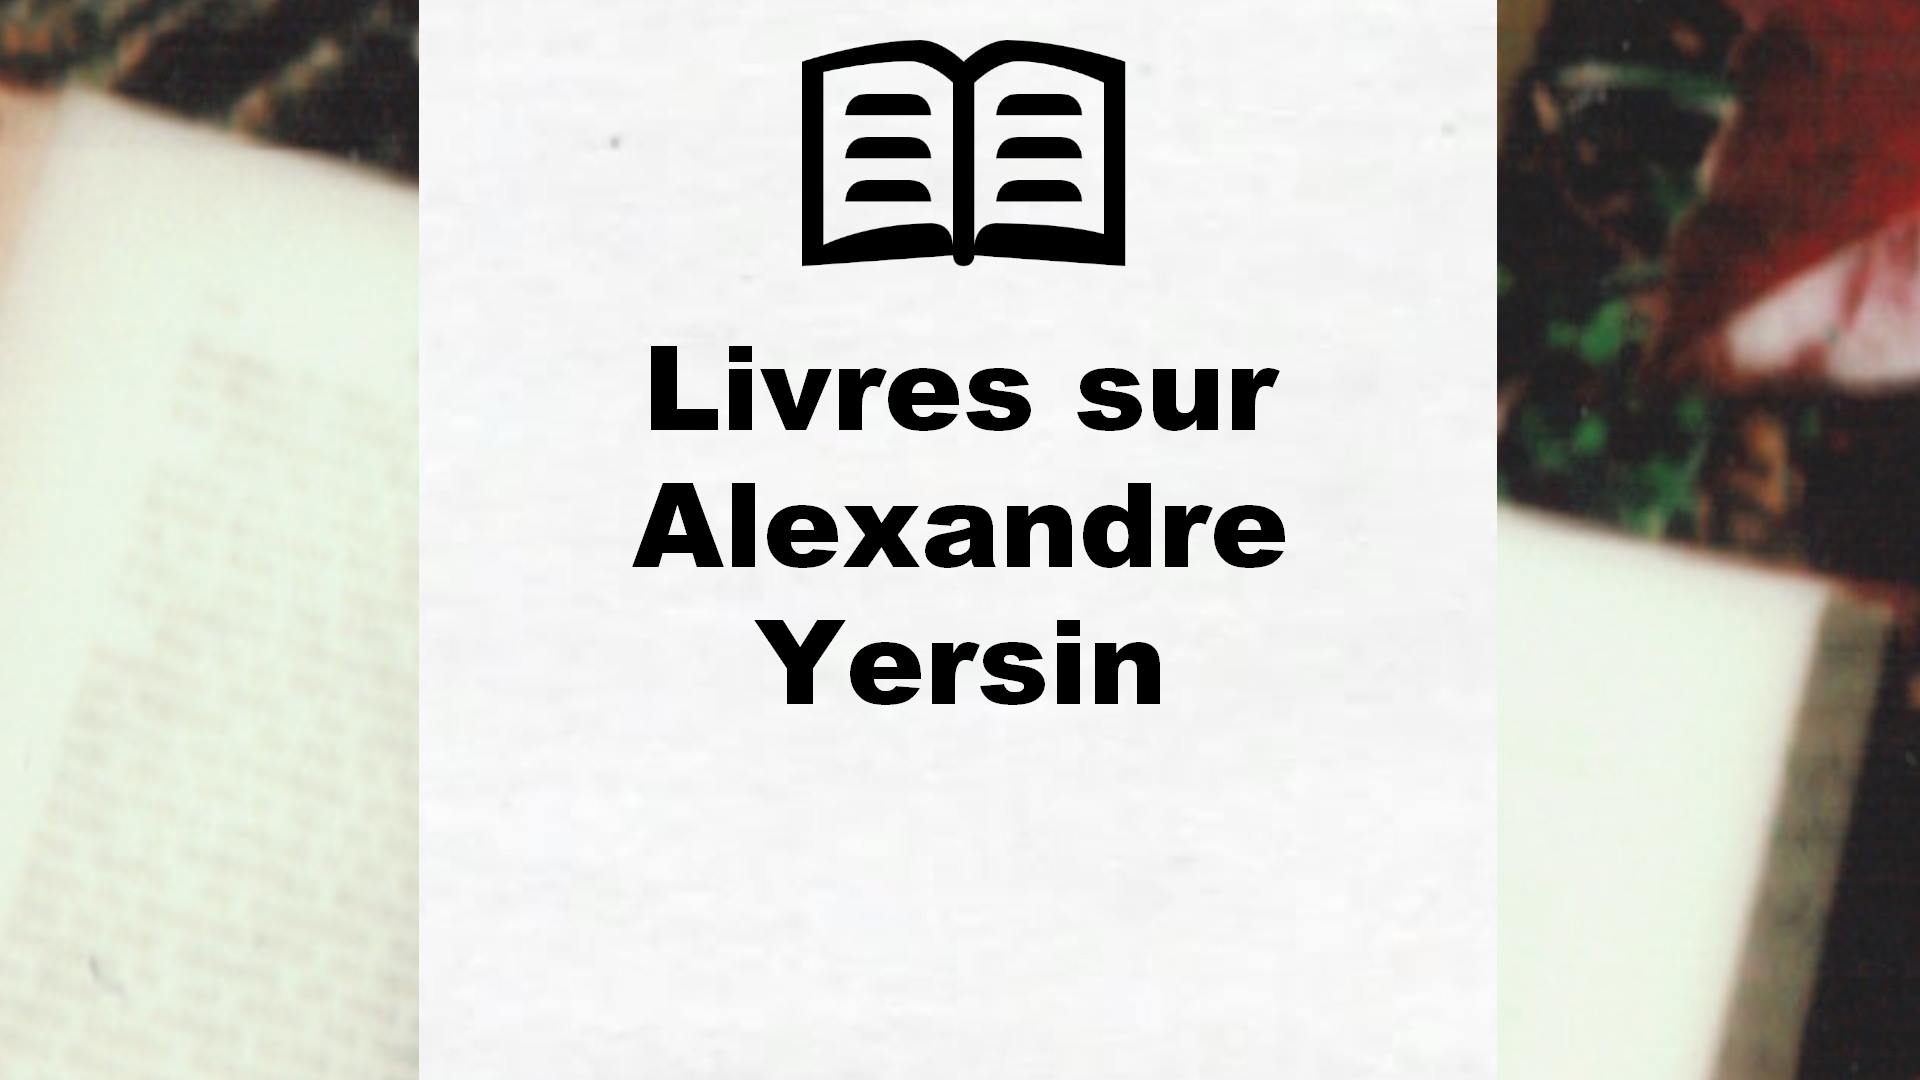 Livres sur Alexandre Yersin